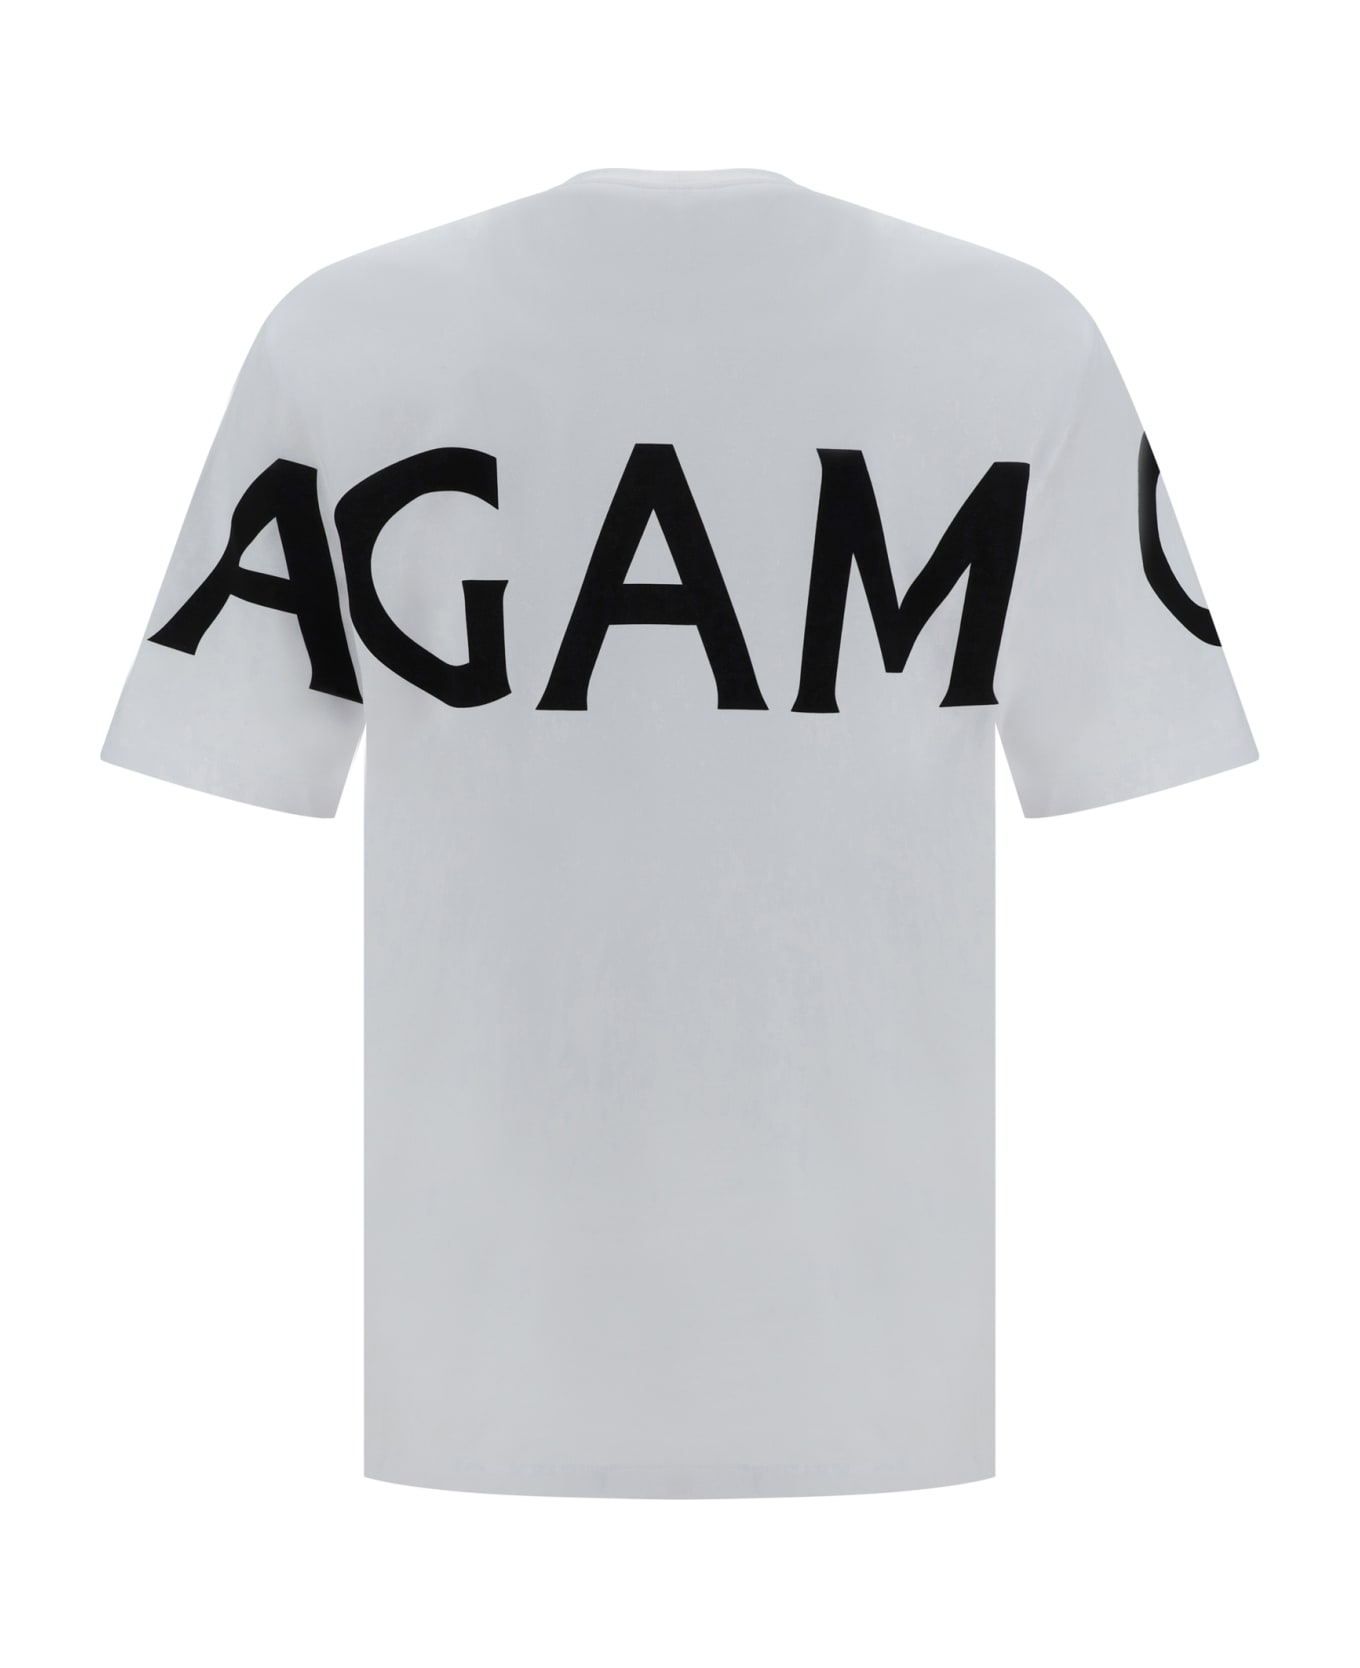 Ferragamo T-shirt - Black-white シャツ